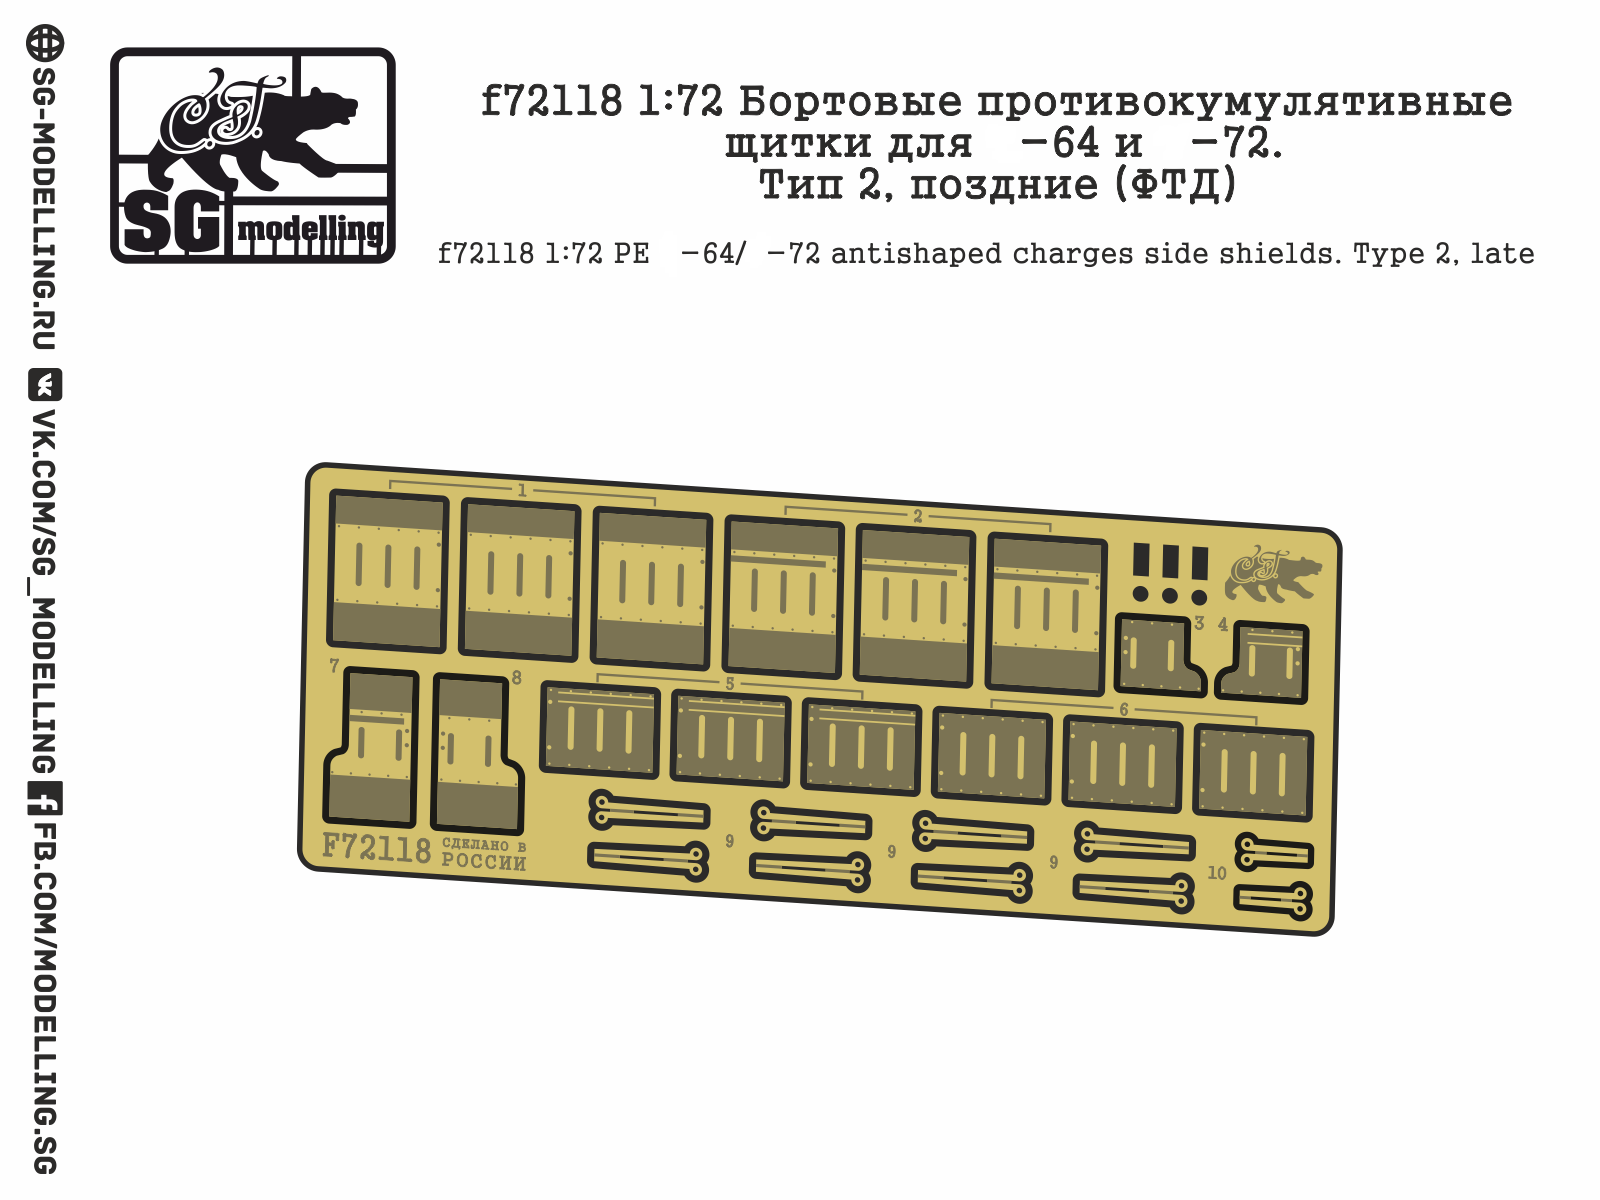 f72118  фототравление  Бортовые противокумулятивные щитки для Танк-64 и -72. Тип 2, поздние  (1:72)